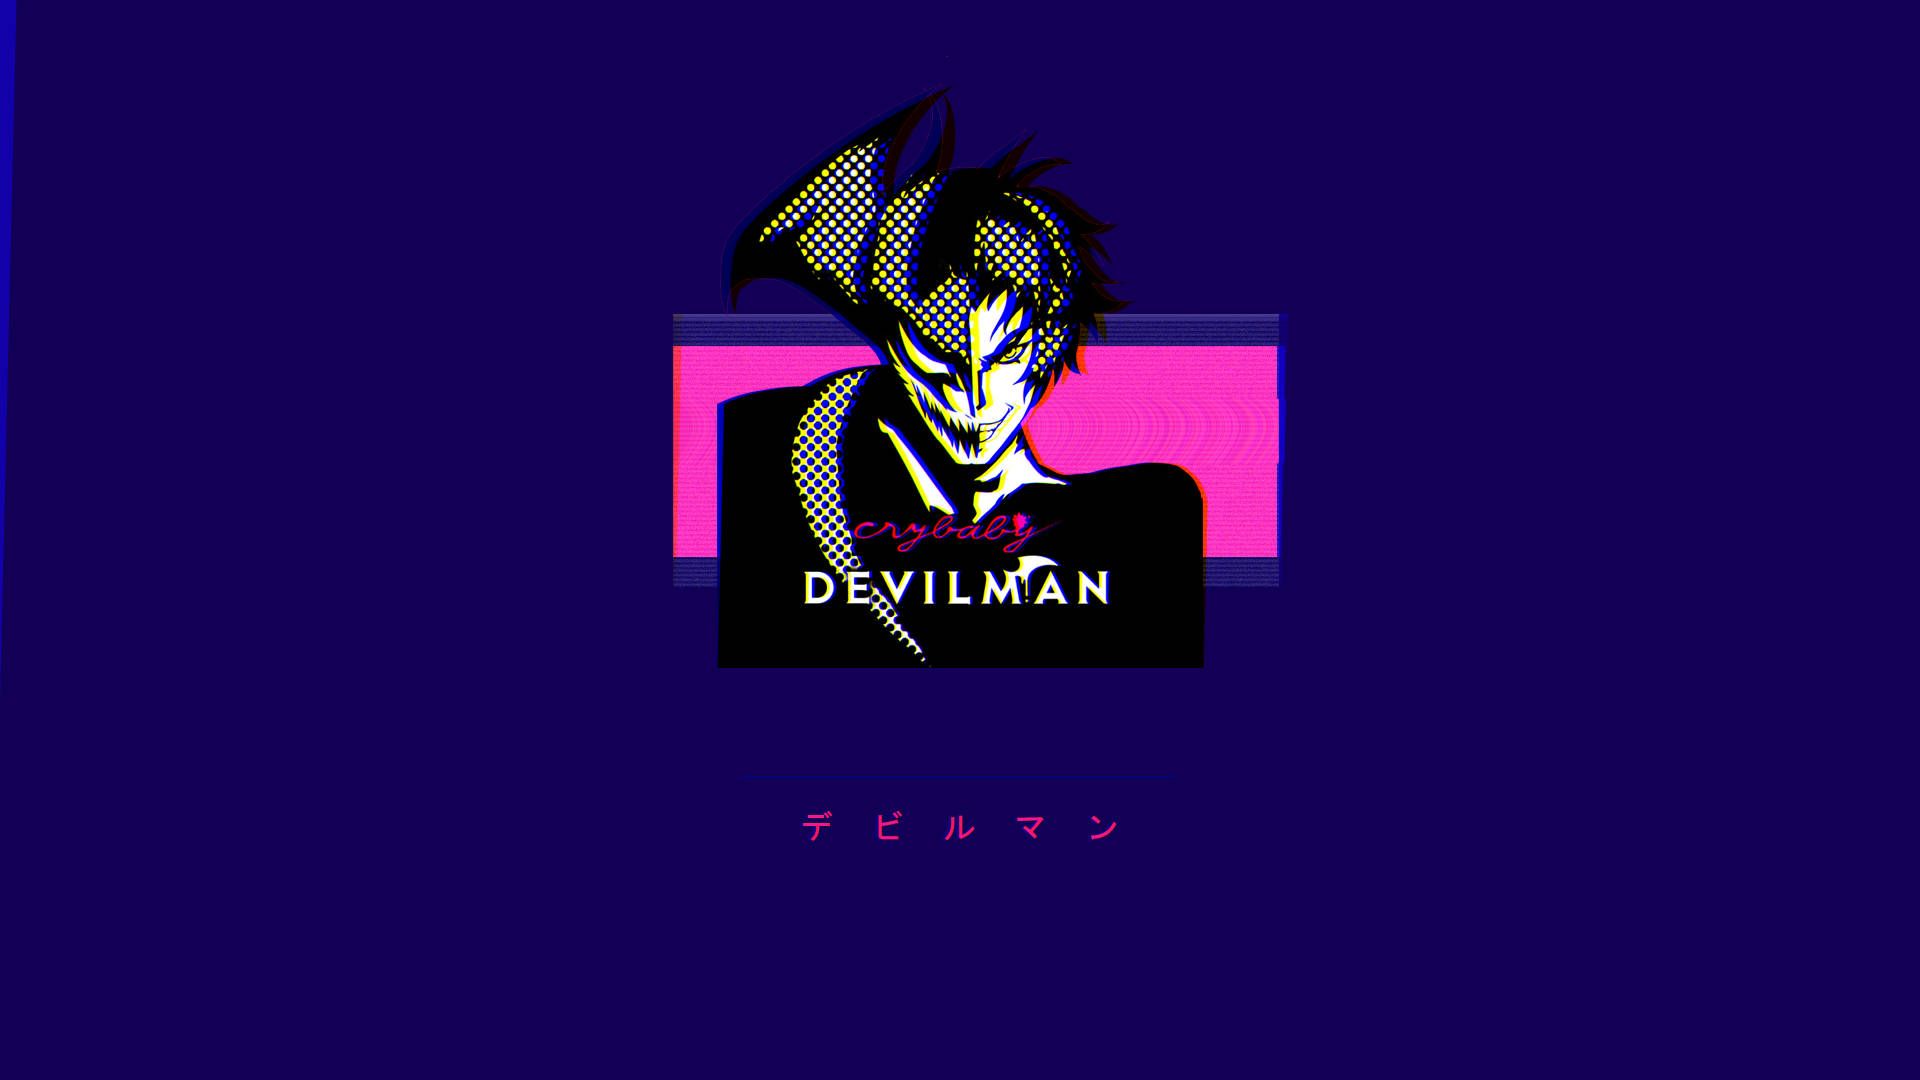 Devilman Hintergrund